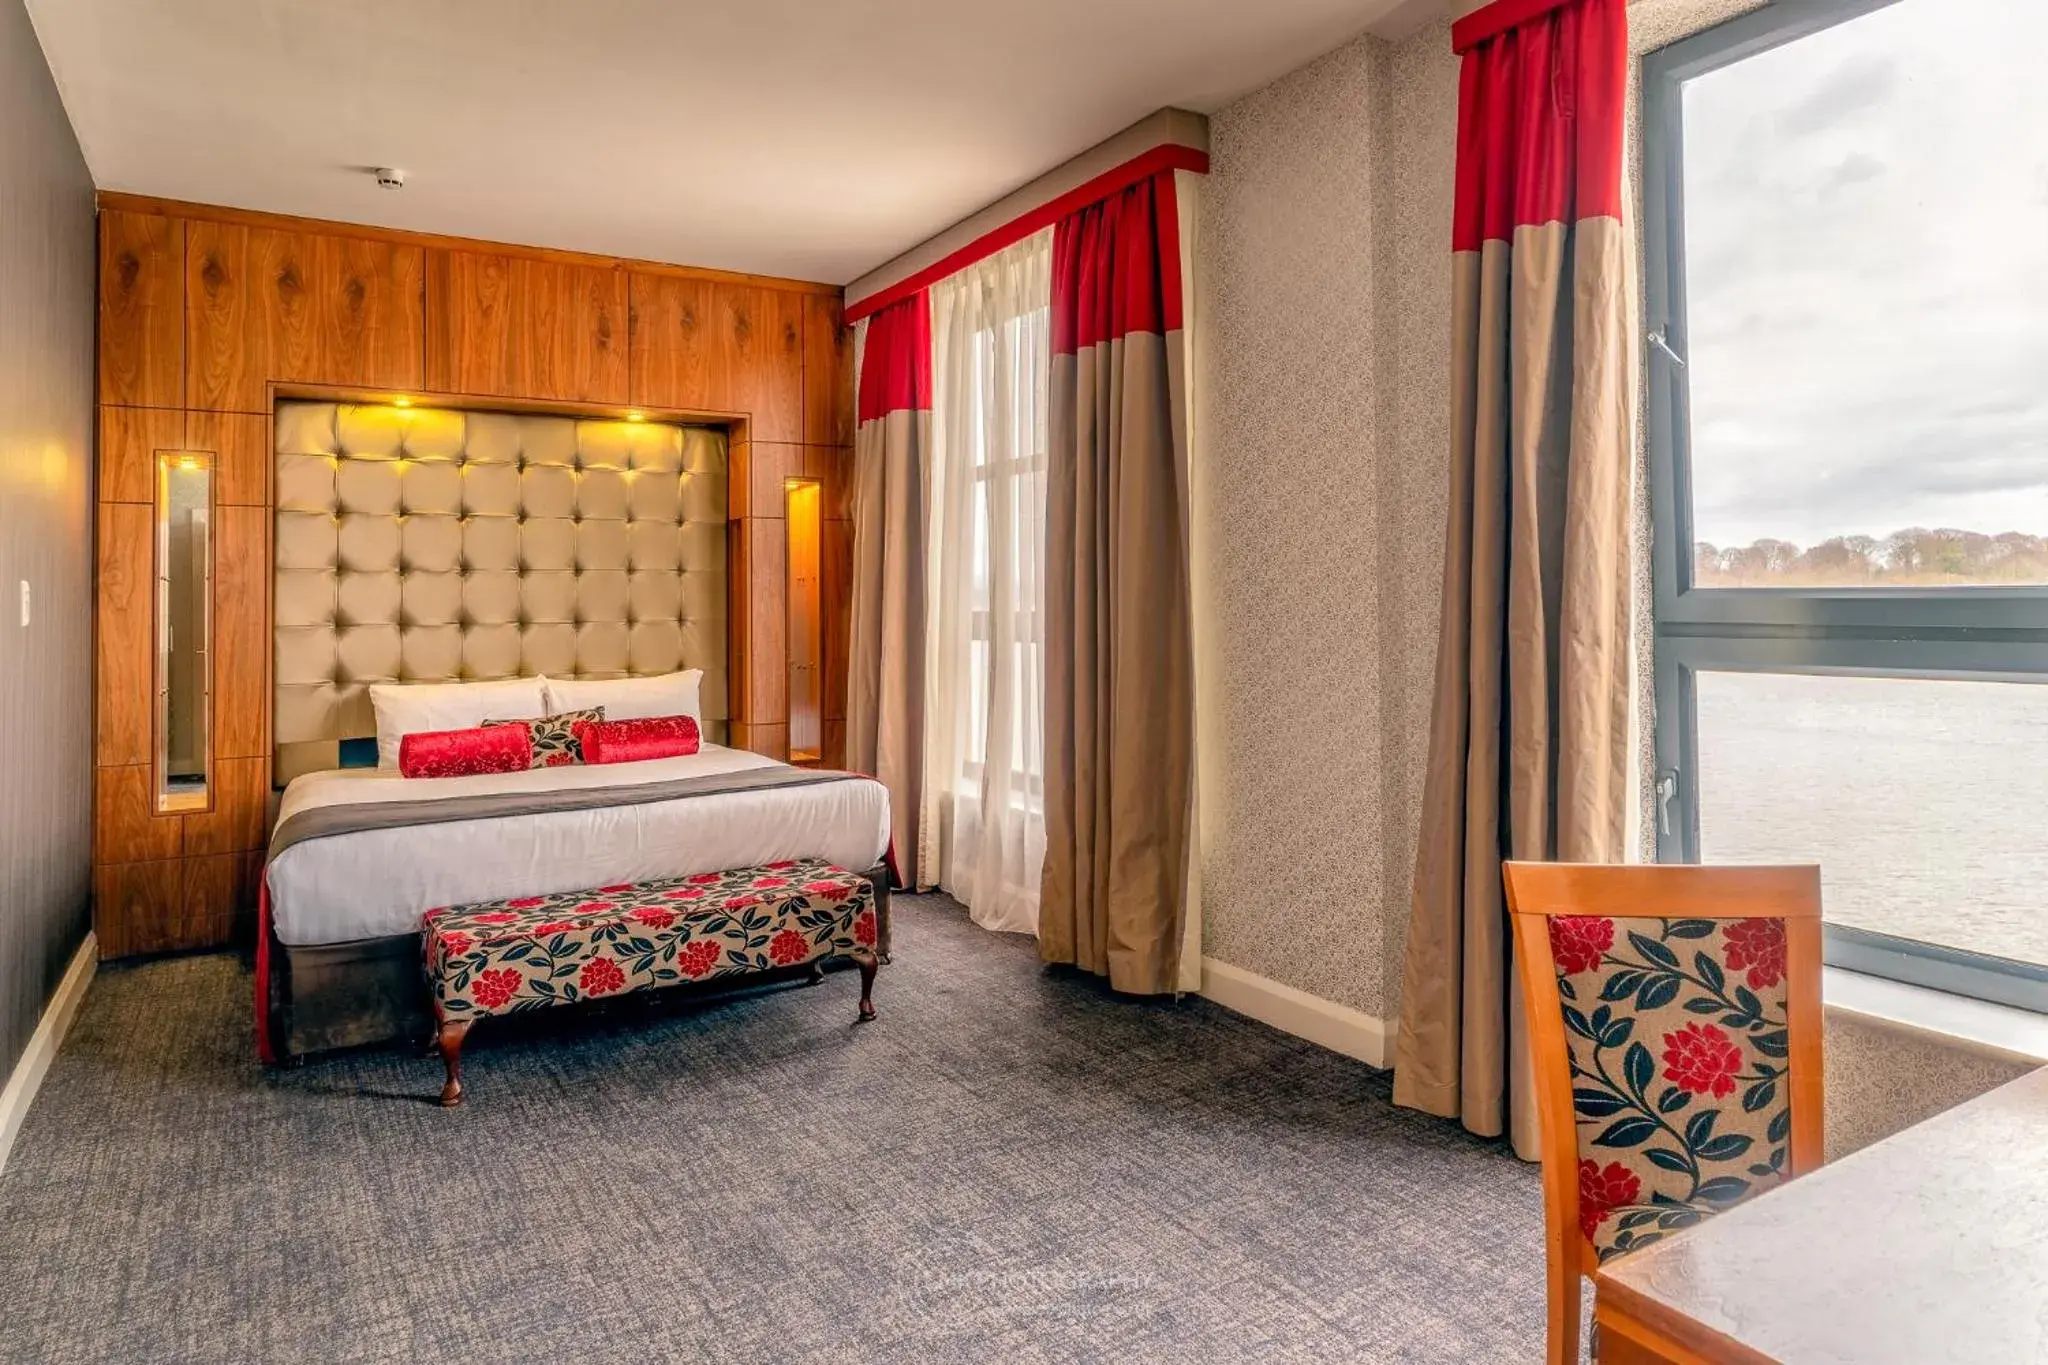 Bedroom, Bed in City Hotel